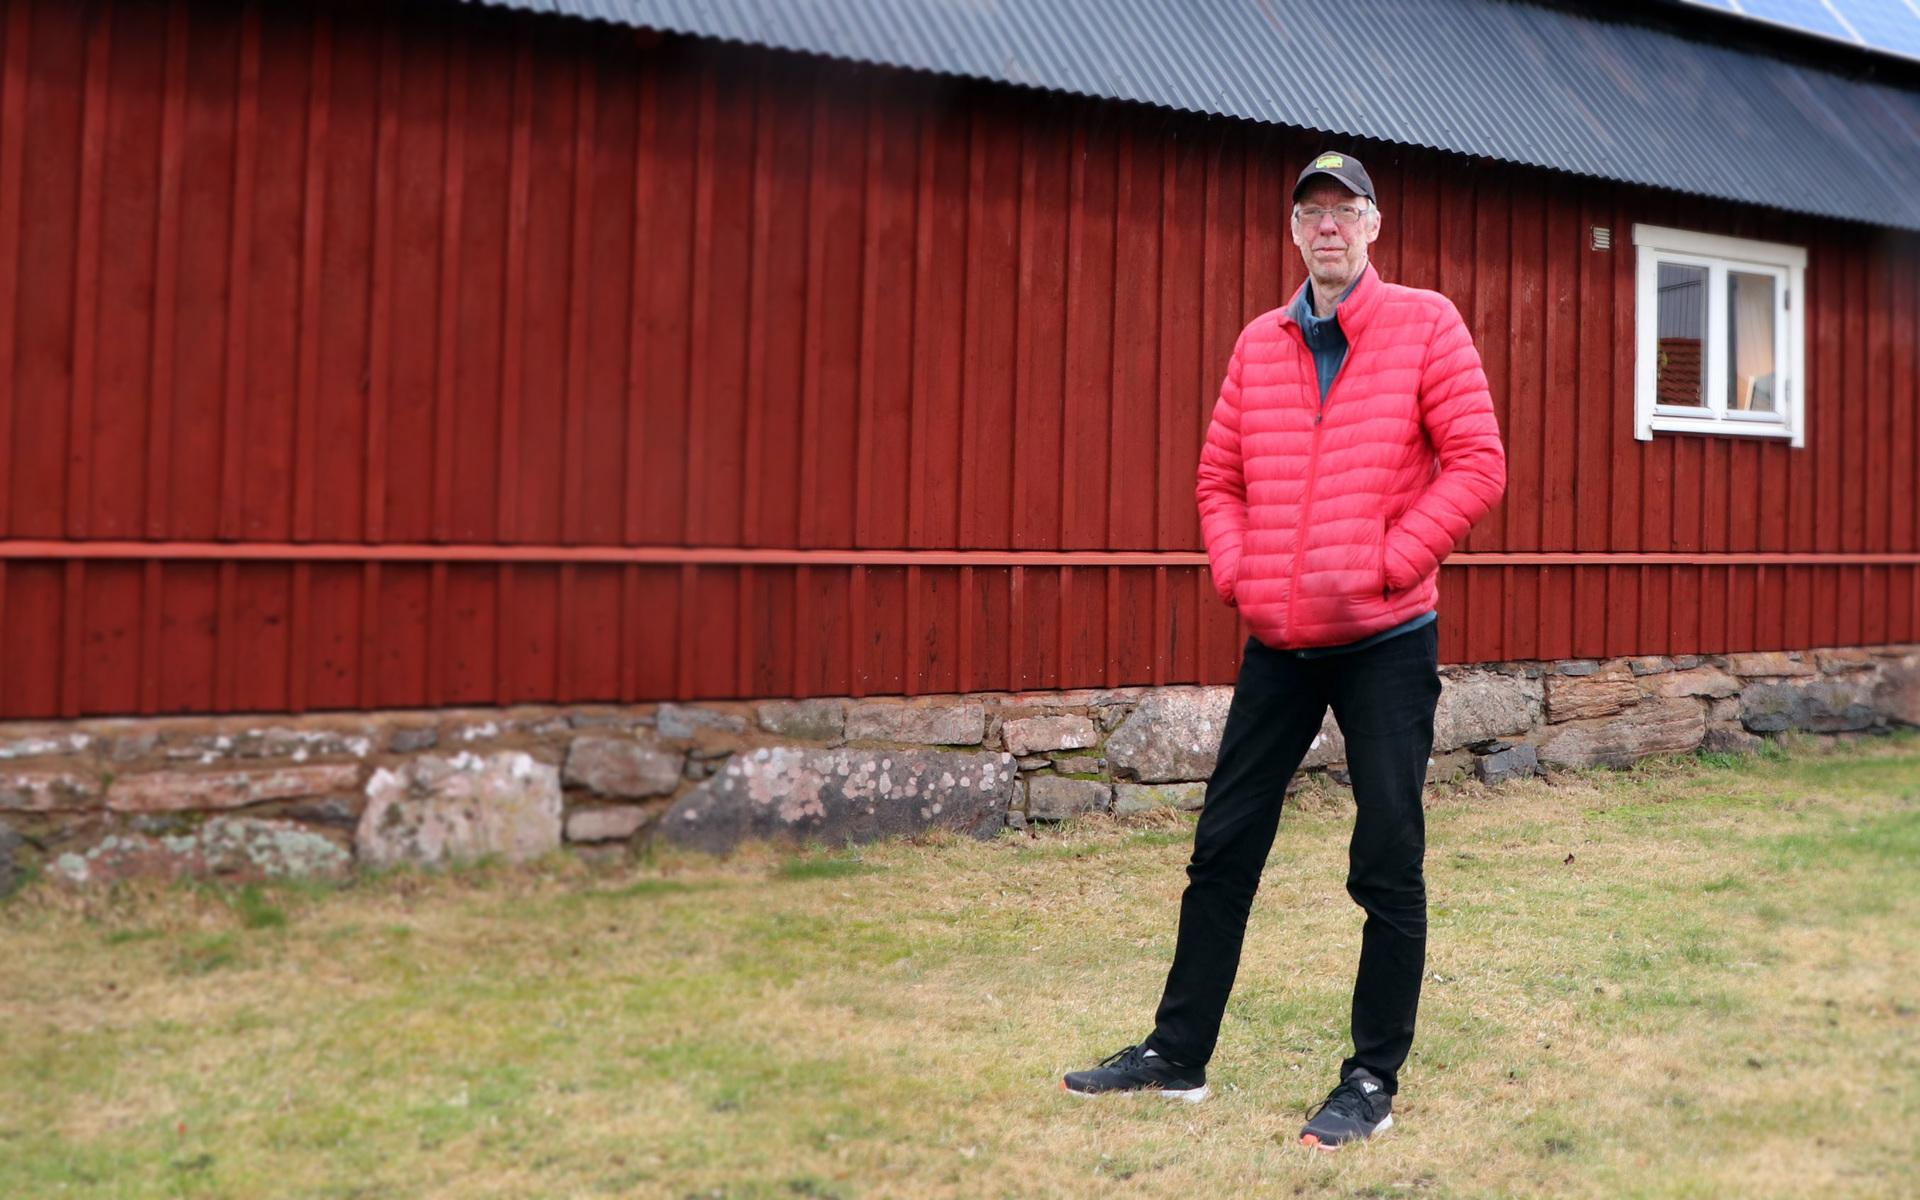 Fredrik Brorsson, pressansvarig i Frillesås bandyklubb, har reagerat på uppgifterna. ”Kände att det var osannolikt,” säger han om att klubben skulle bedriva försäljning via dörrknackning. 